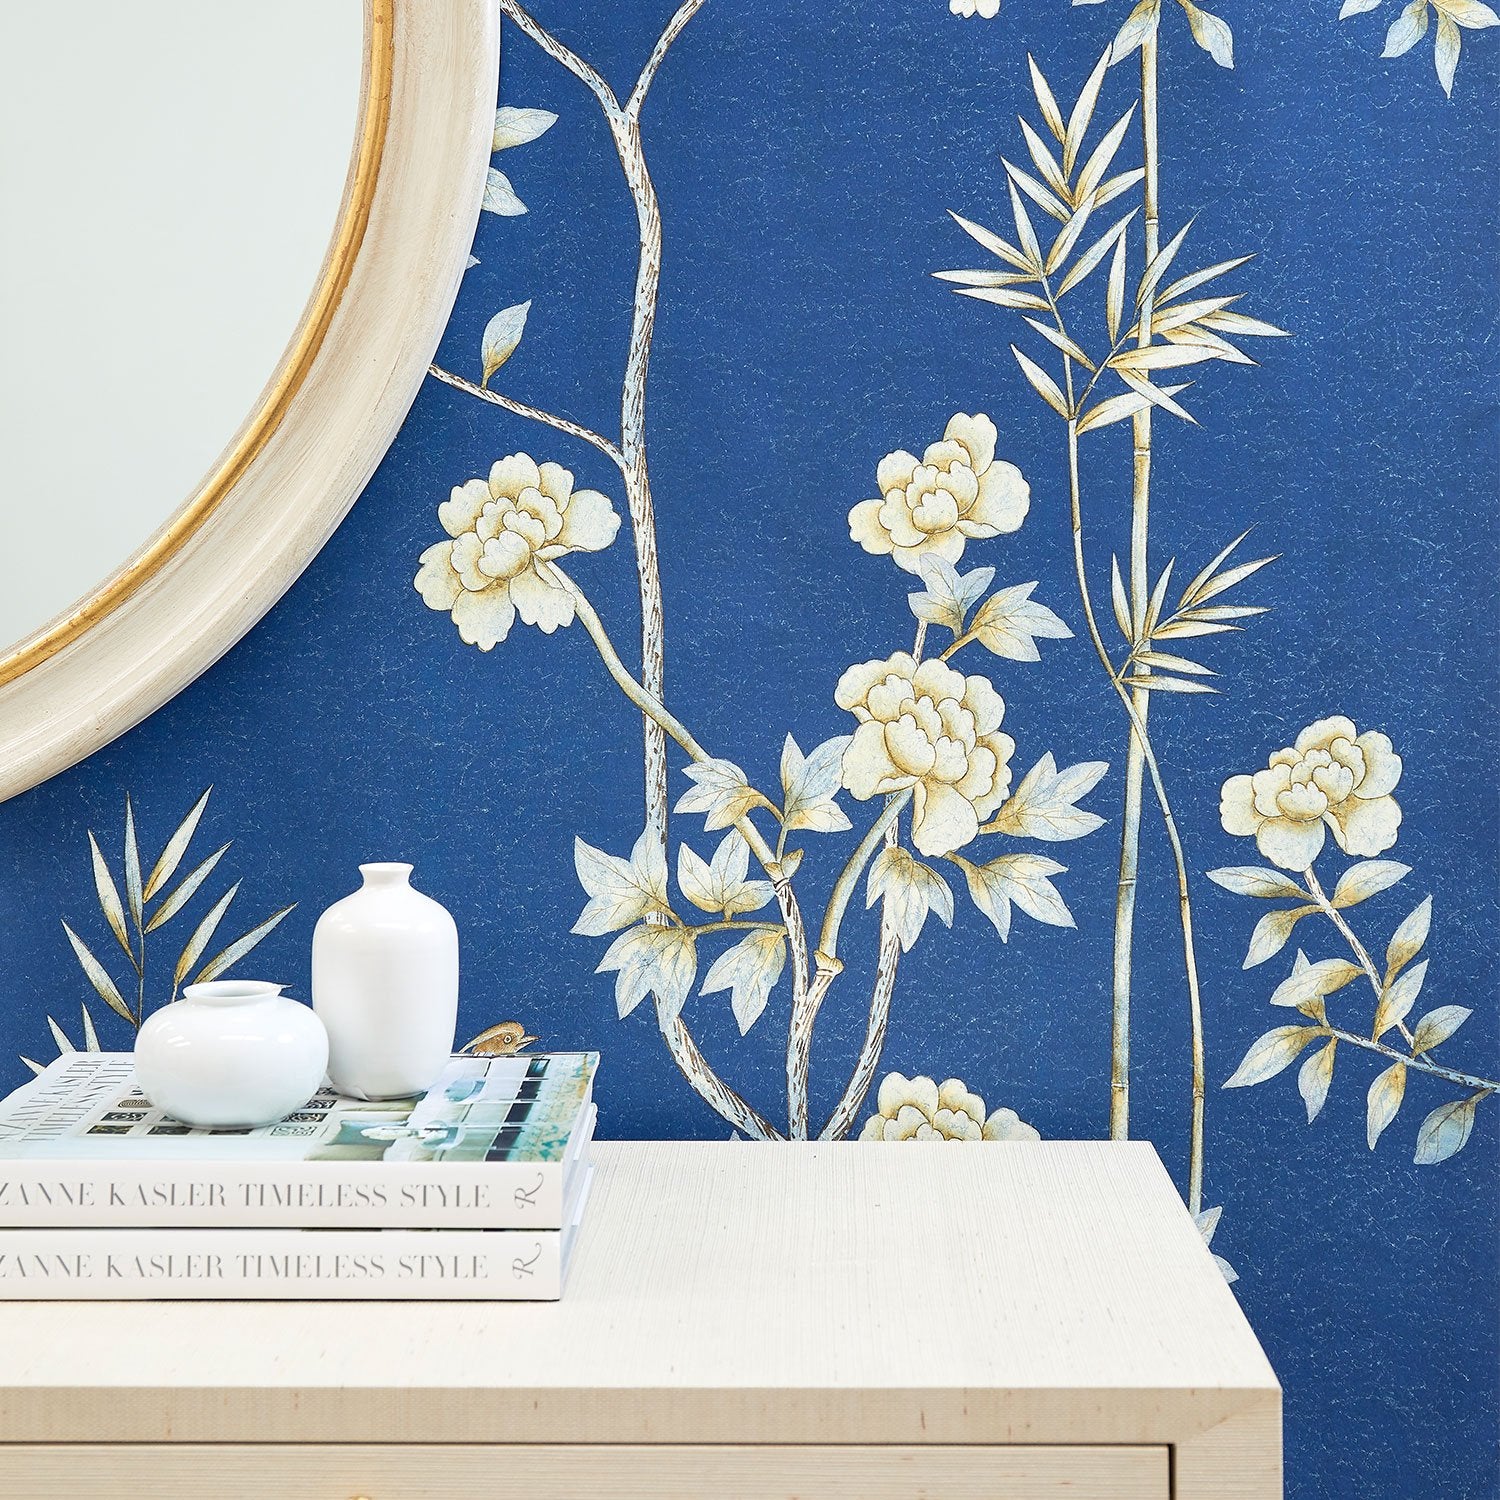 Belfort in Royal Blue Chinoiserie Wallpaper Behind Dresser